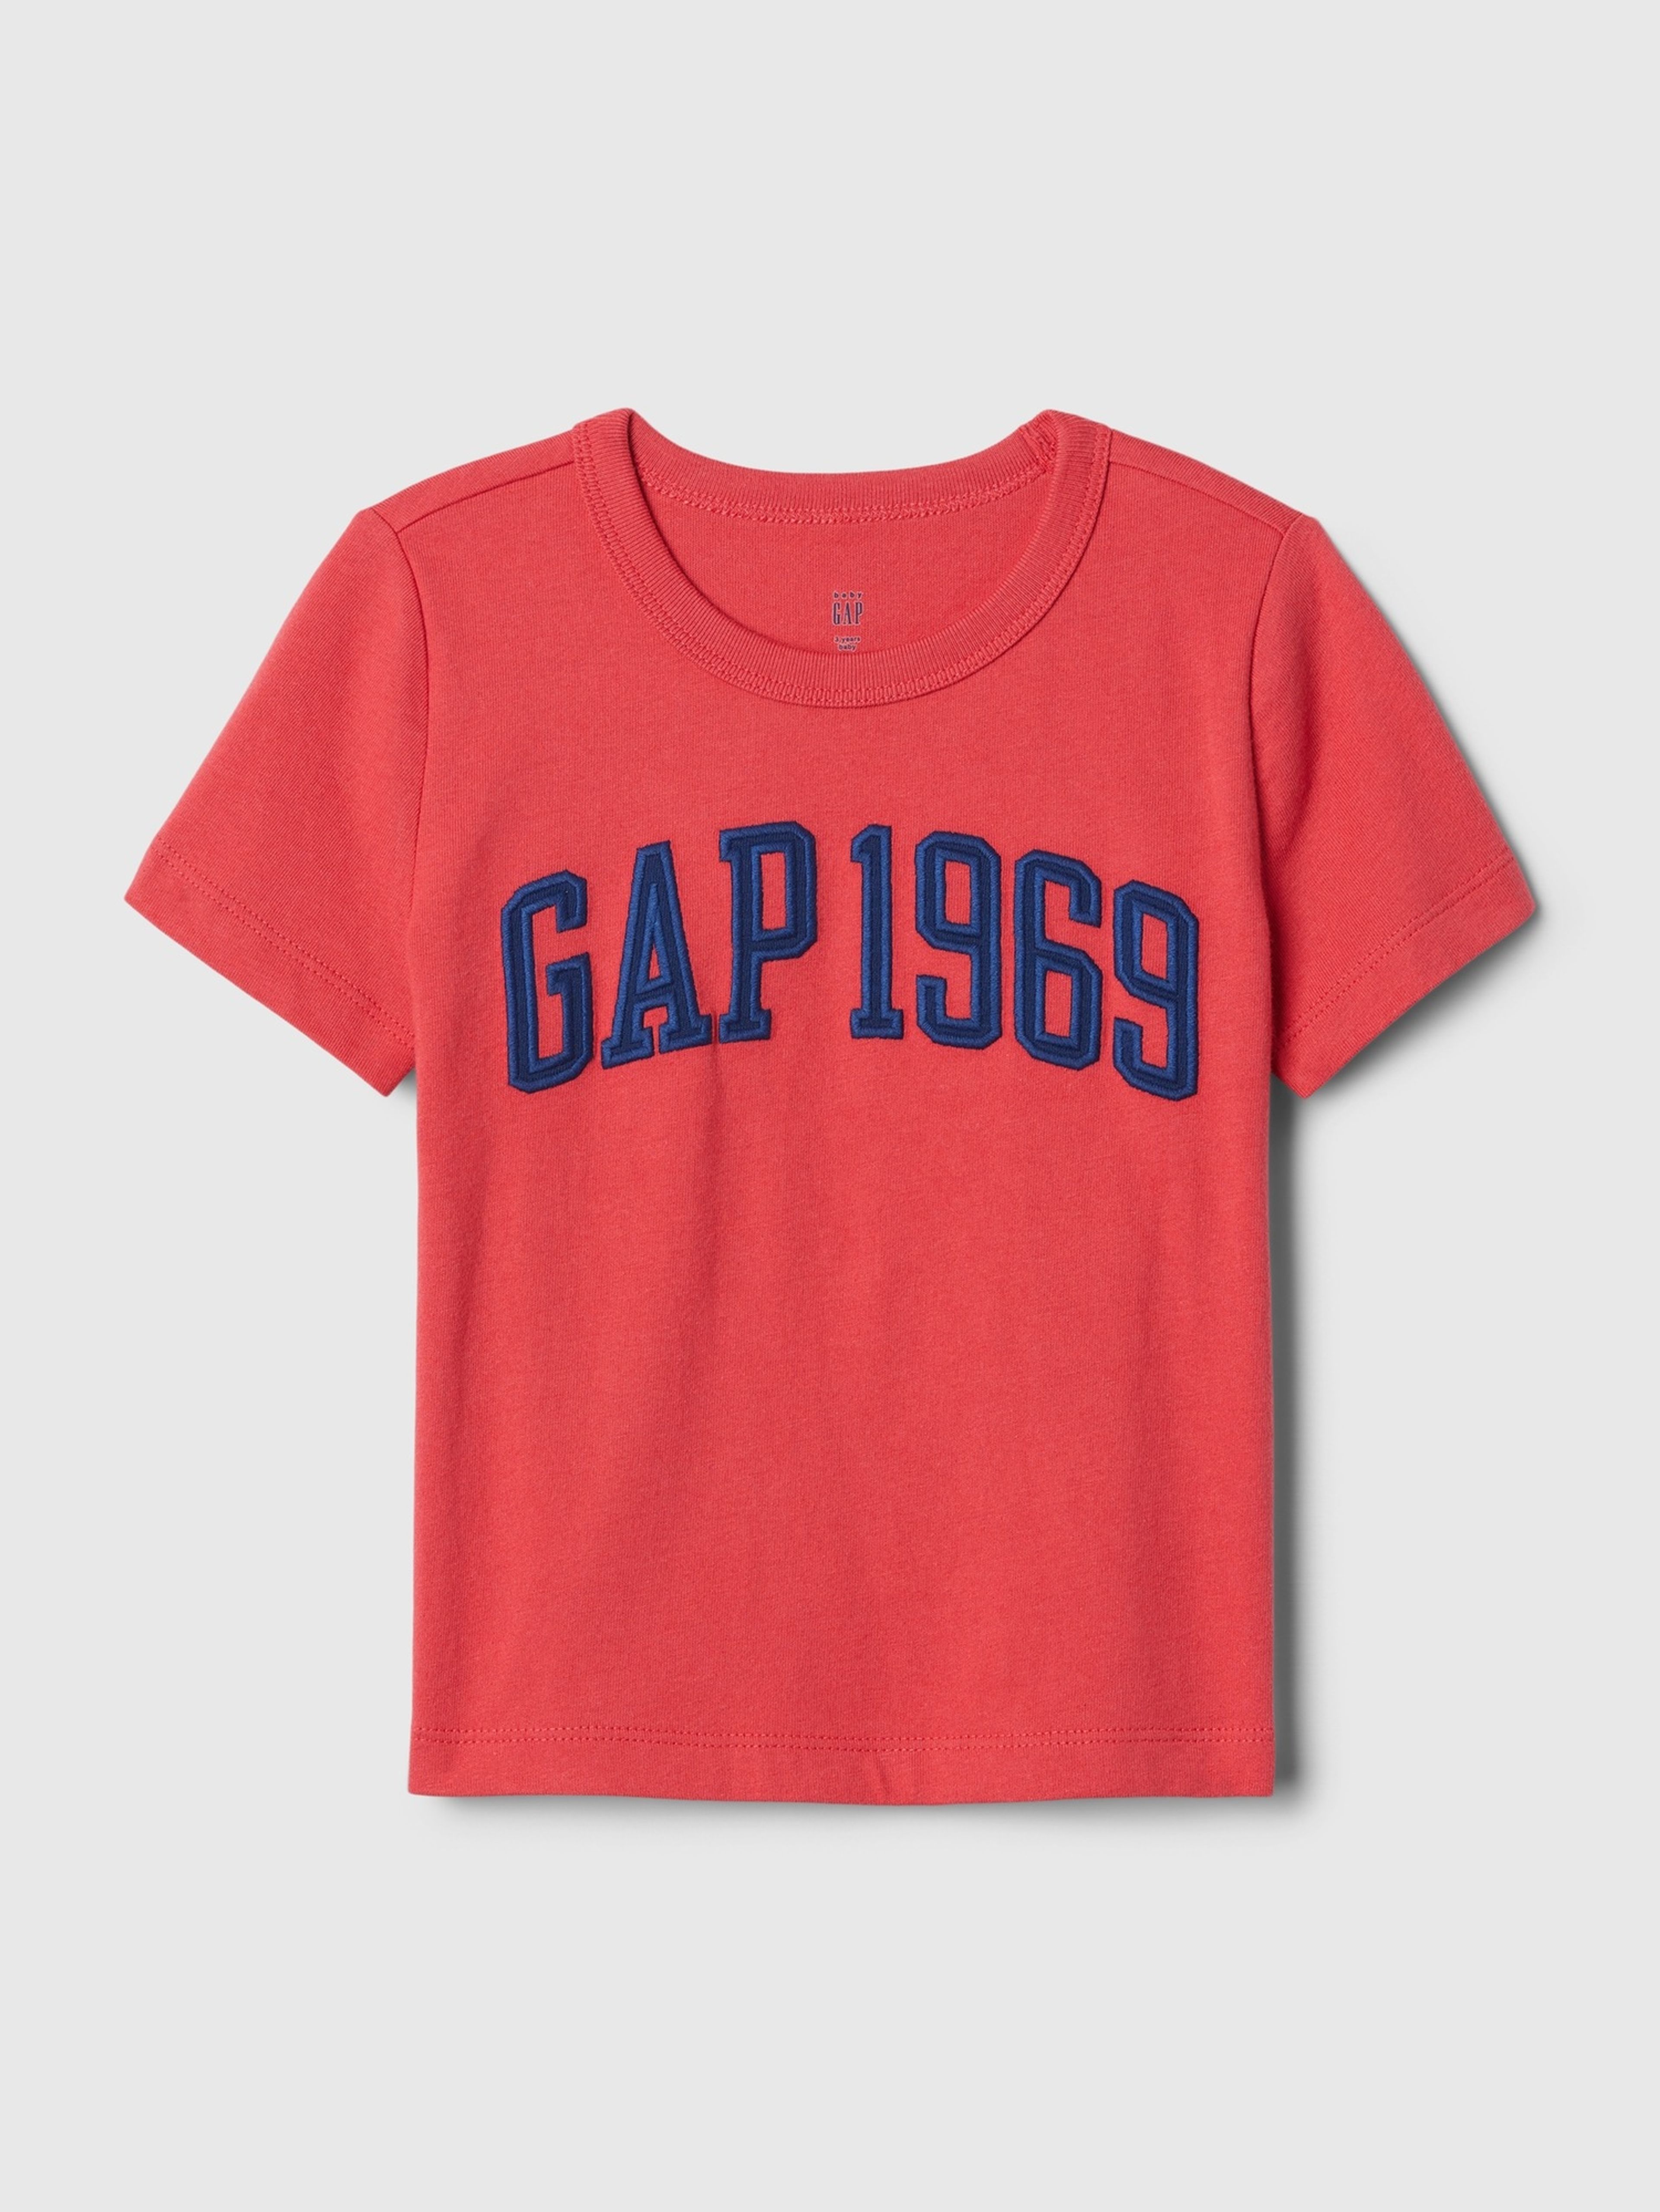 Kinder-T-Shirt GAP 1969